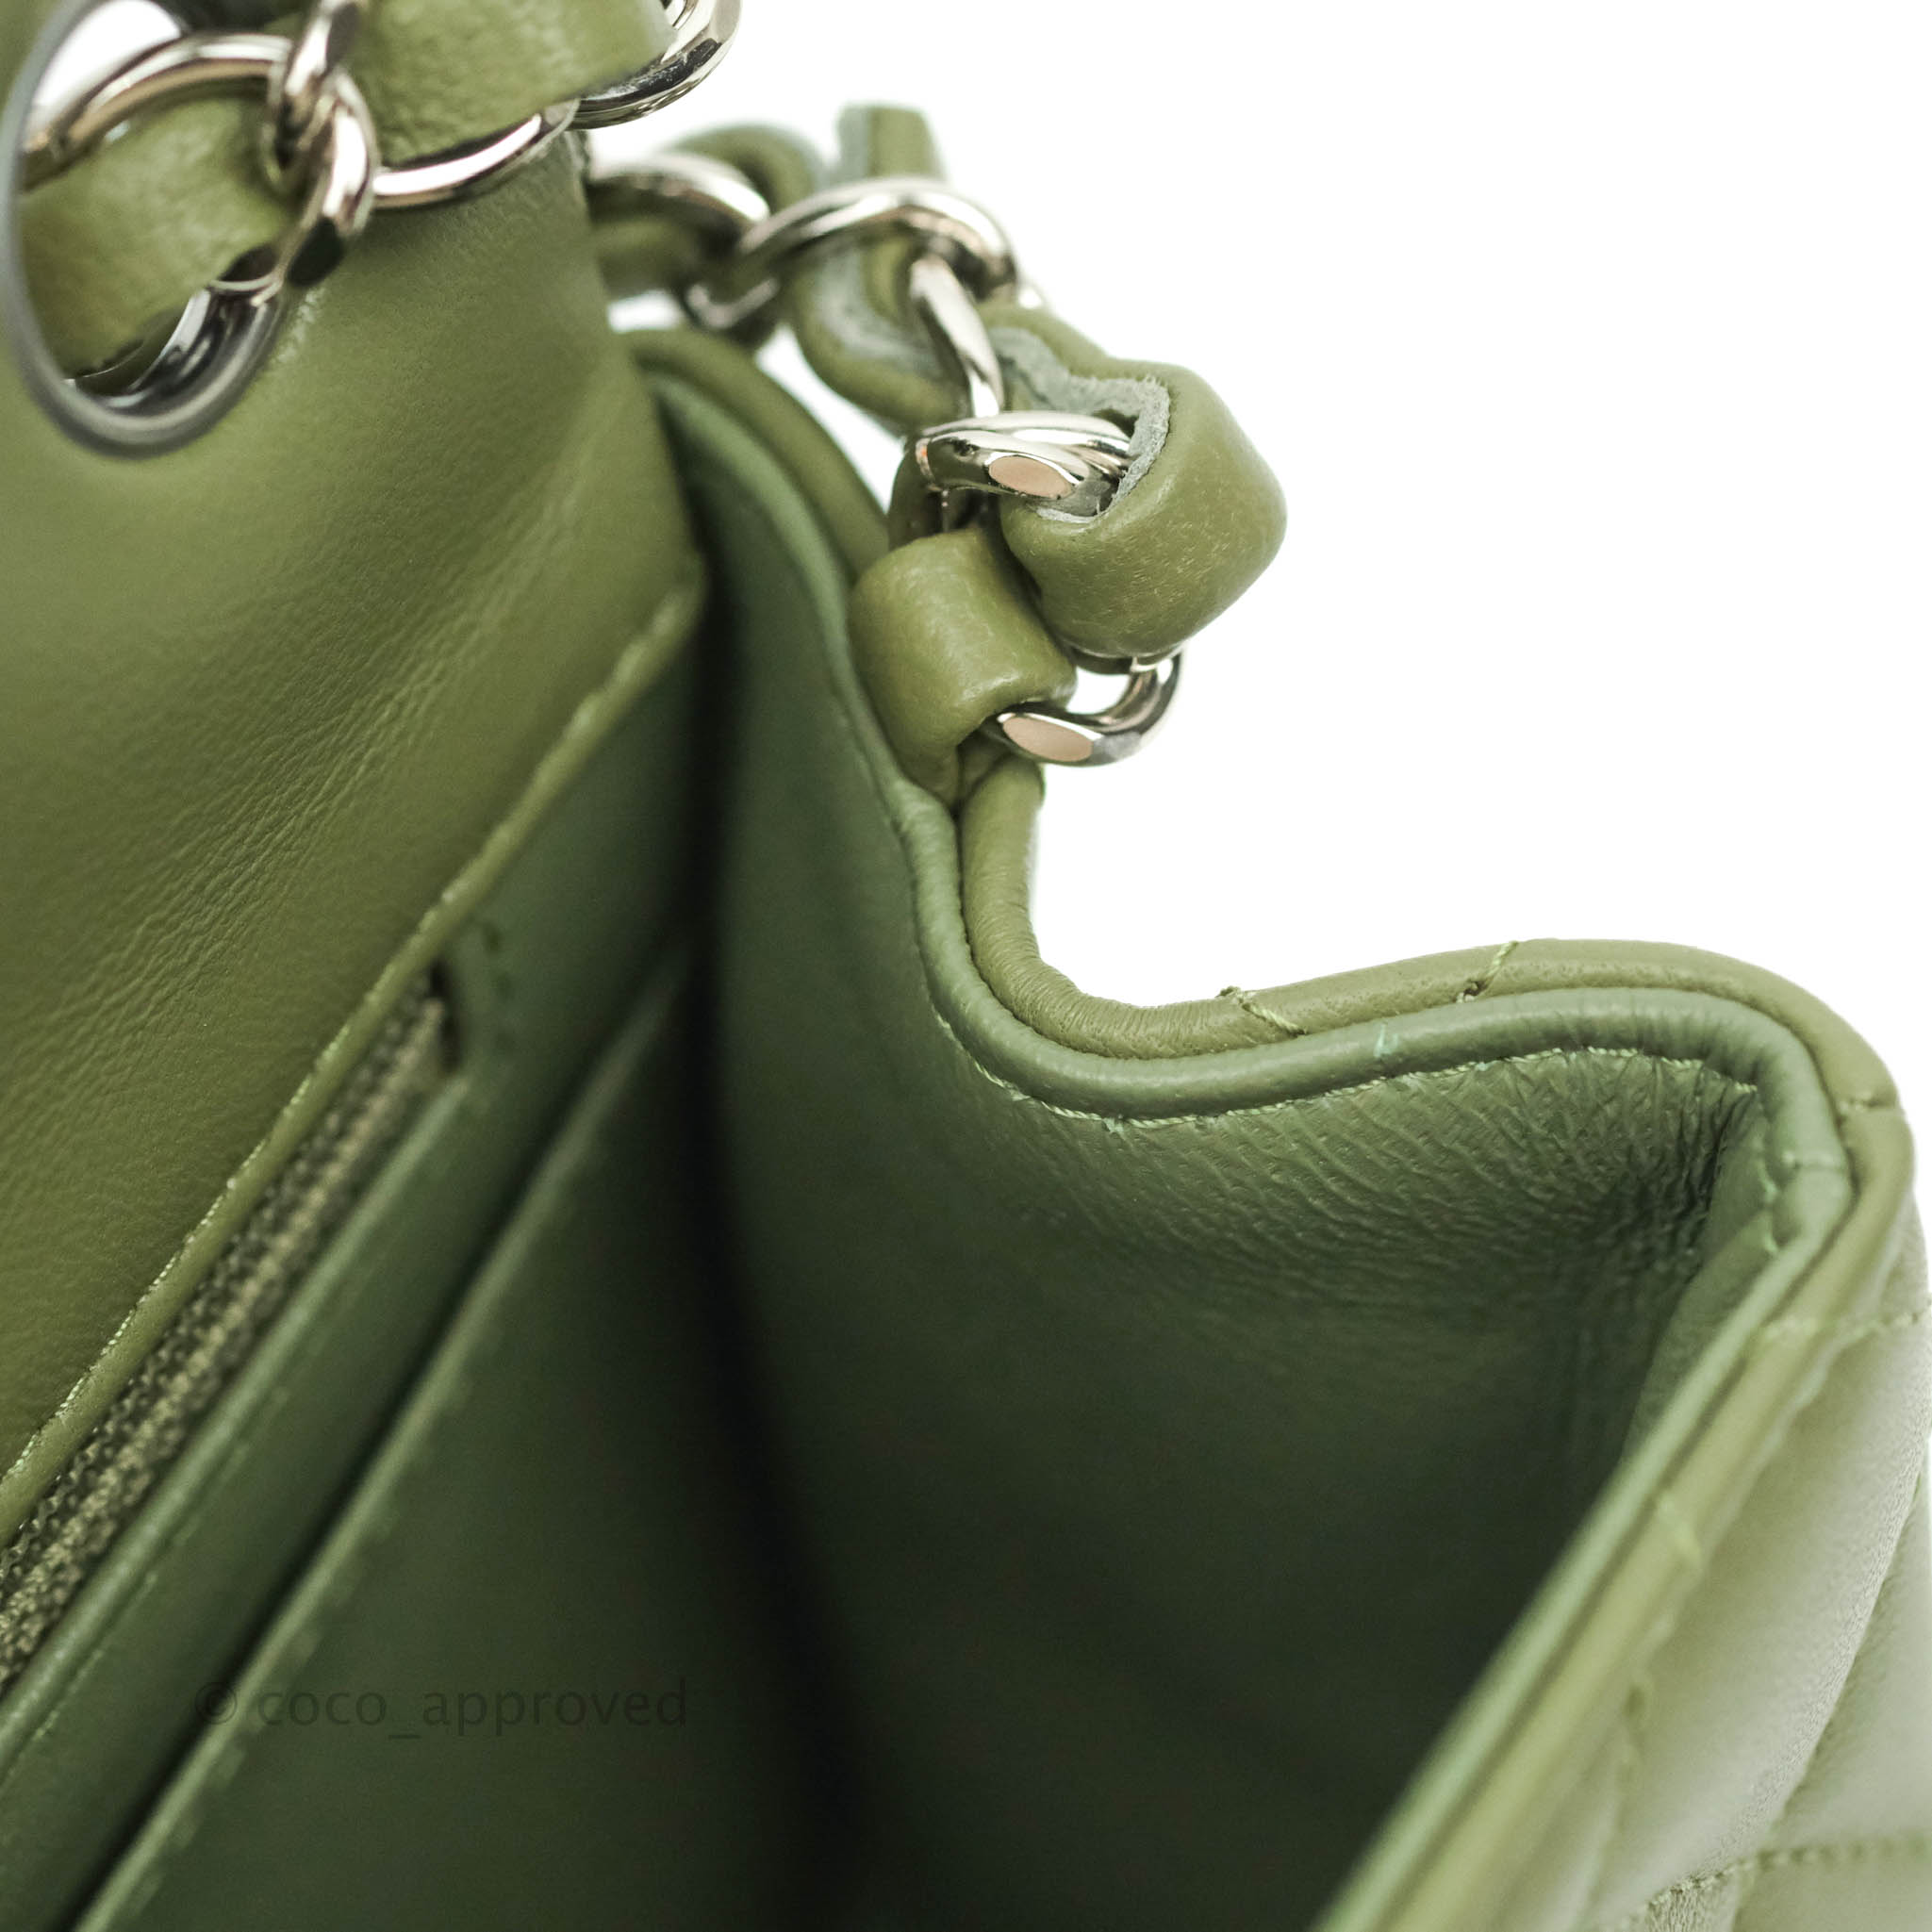 green chanel handbag